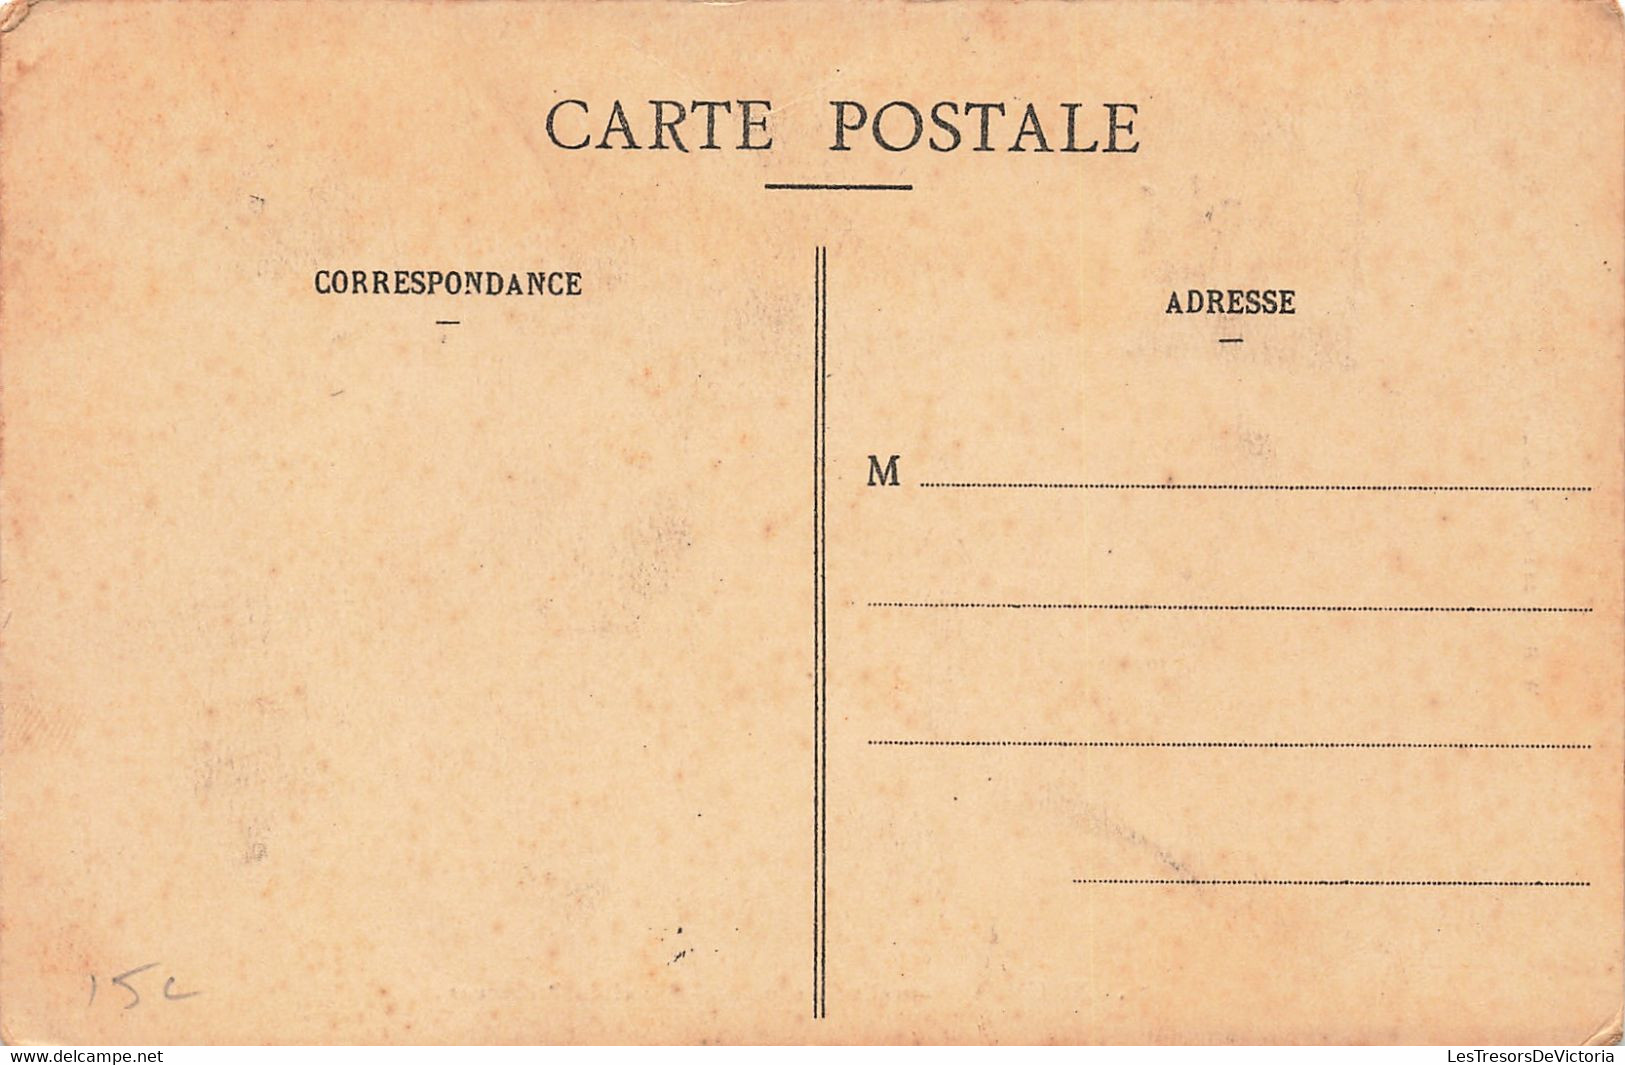 Nouvelle Calédonie - Nouméa - Hôtel Du Procureur - Oblitéré Nouméa 1914 - Edit. W.H.C. - Carte Postale Ancienne - New Caledonia